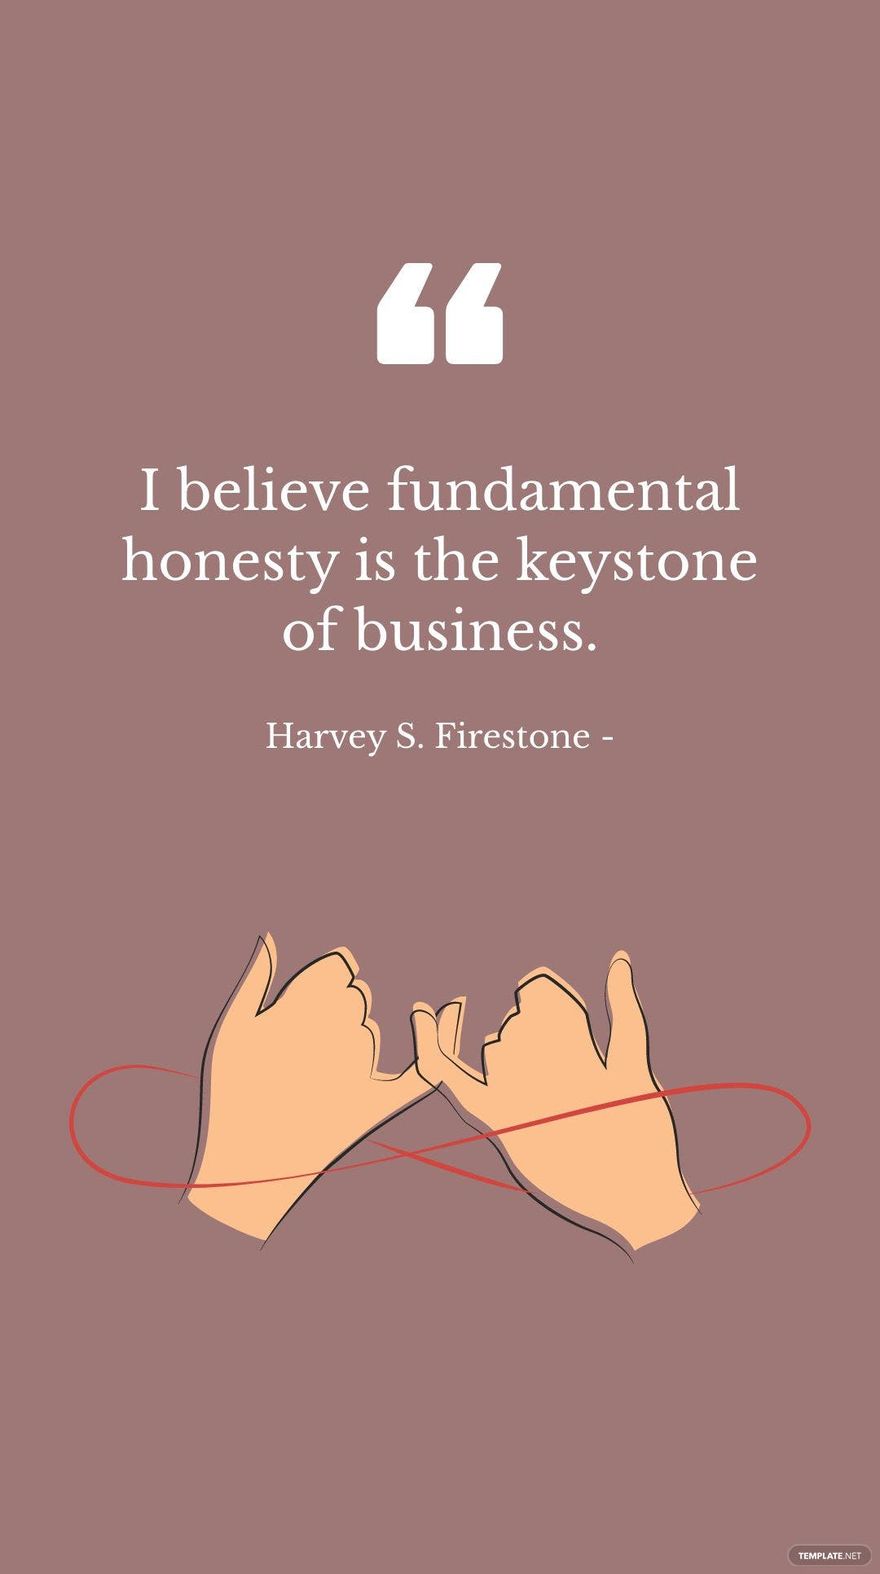 Free Harvey S. Firestone - I believe fundamental honesty is the keystone of business. in JPG